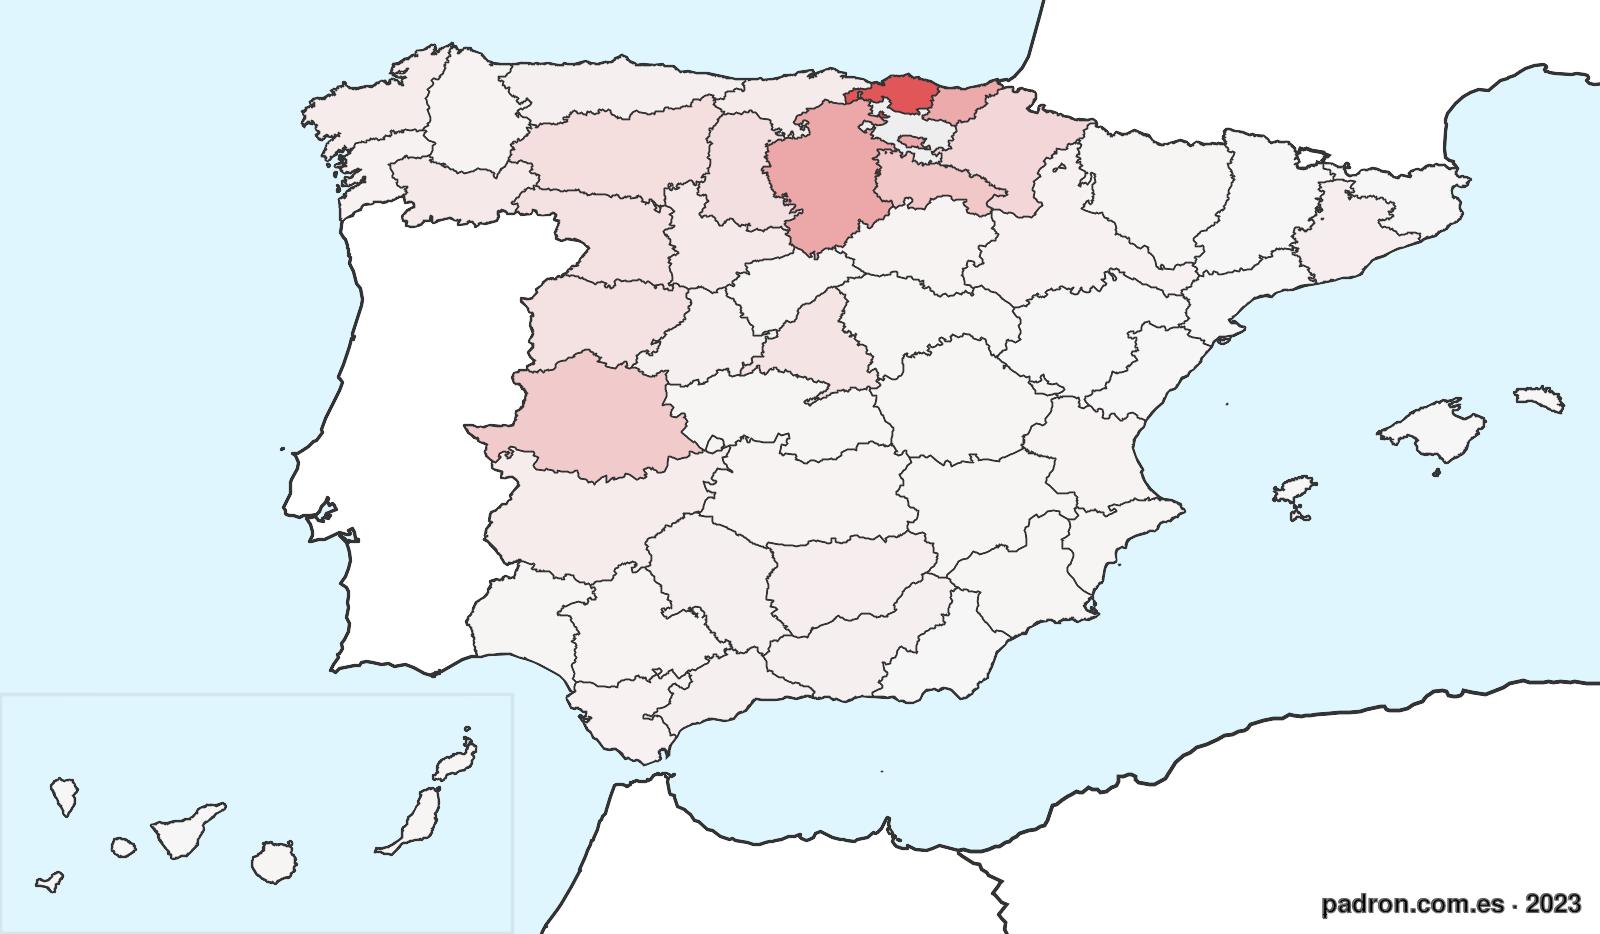 Población por provincia de origen en Araba/Álava